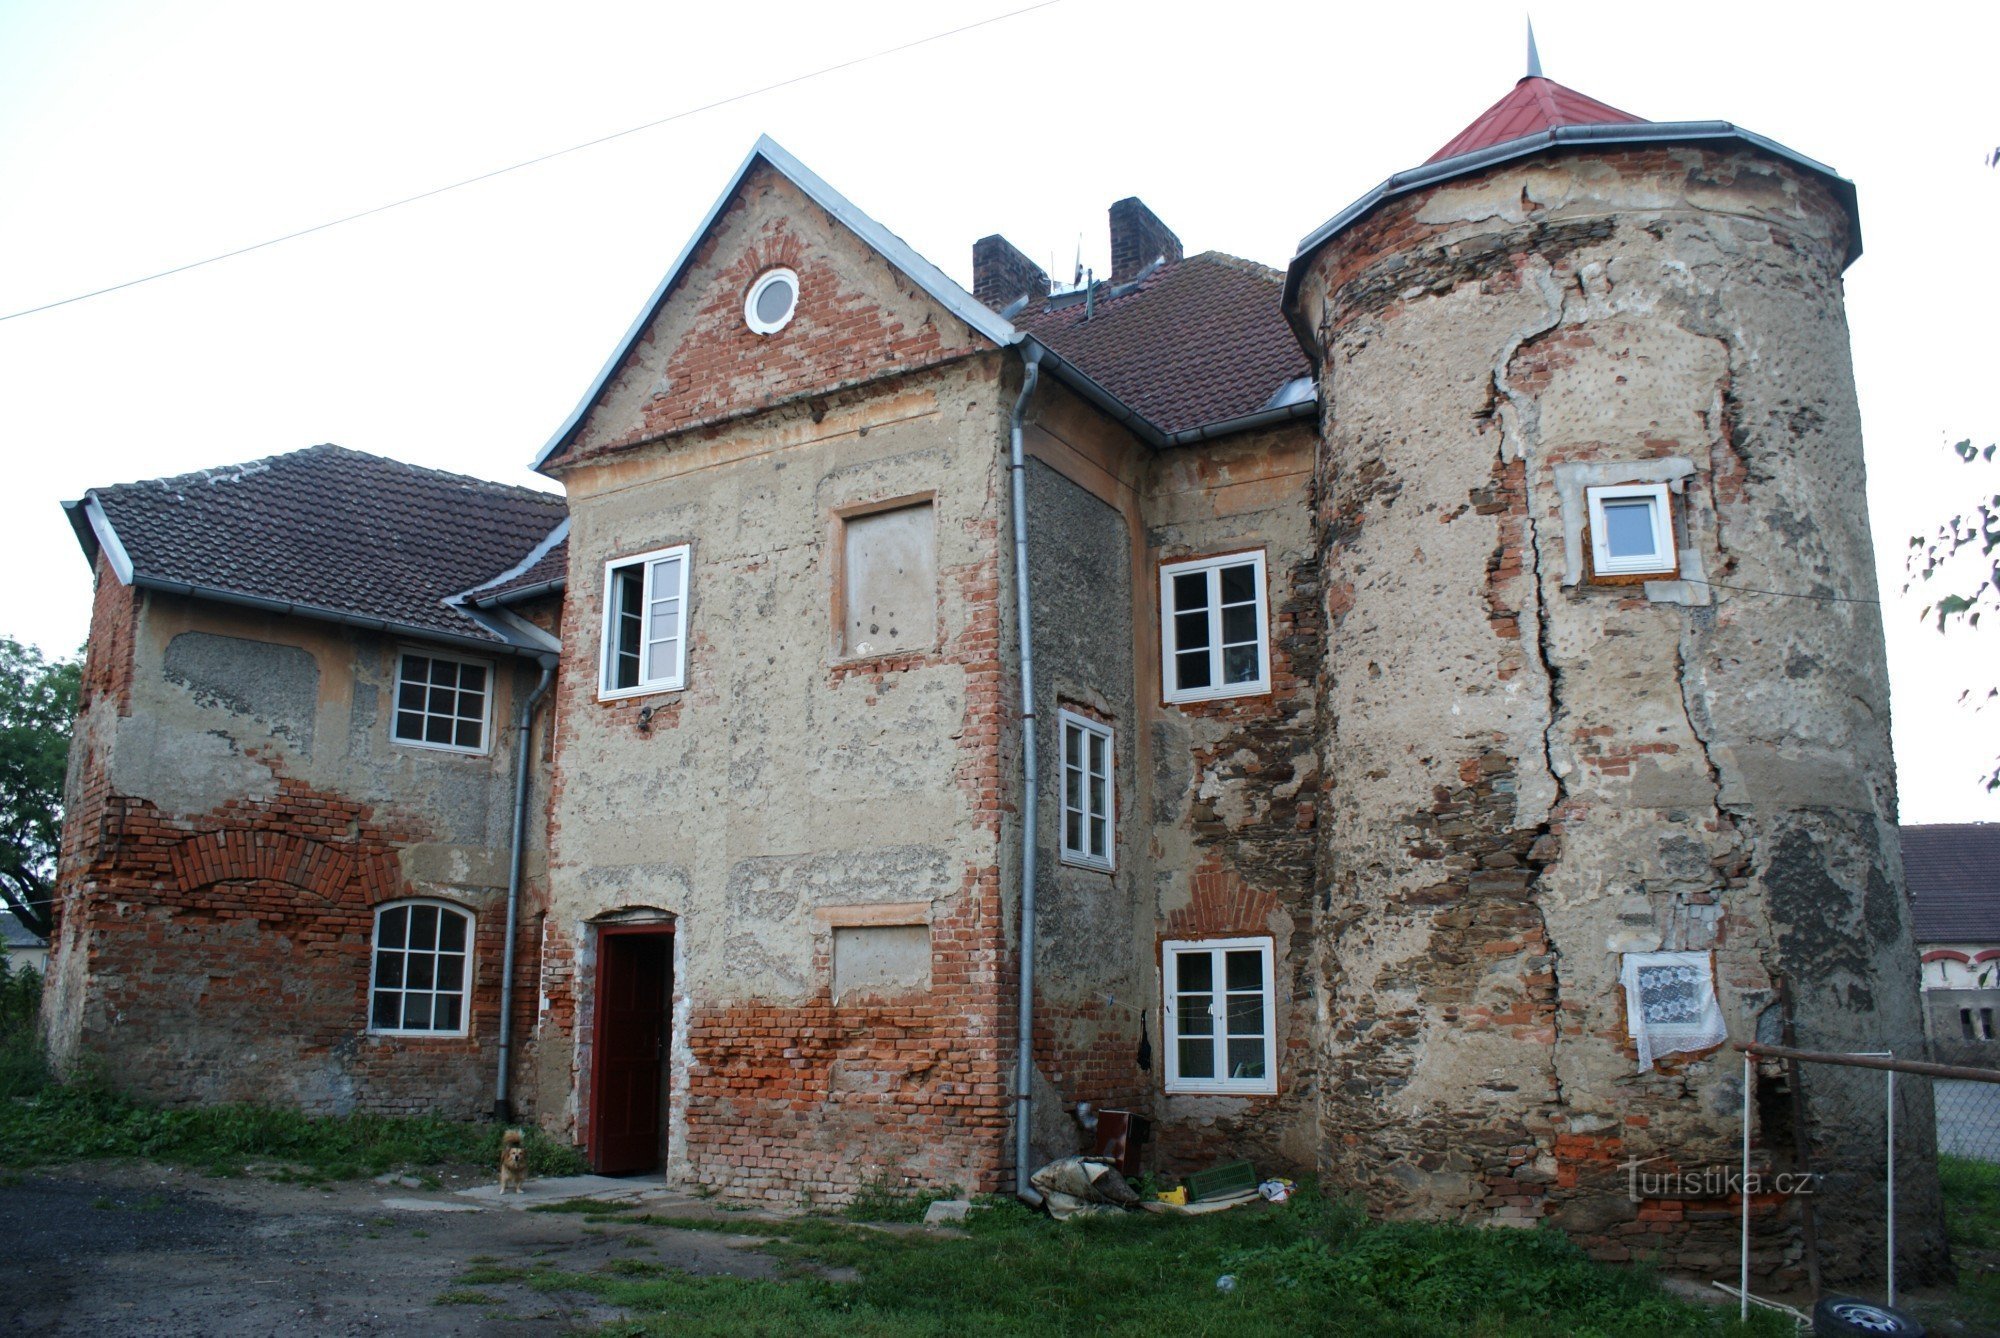 Učenci na Čáslavu - trdnjava